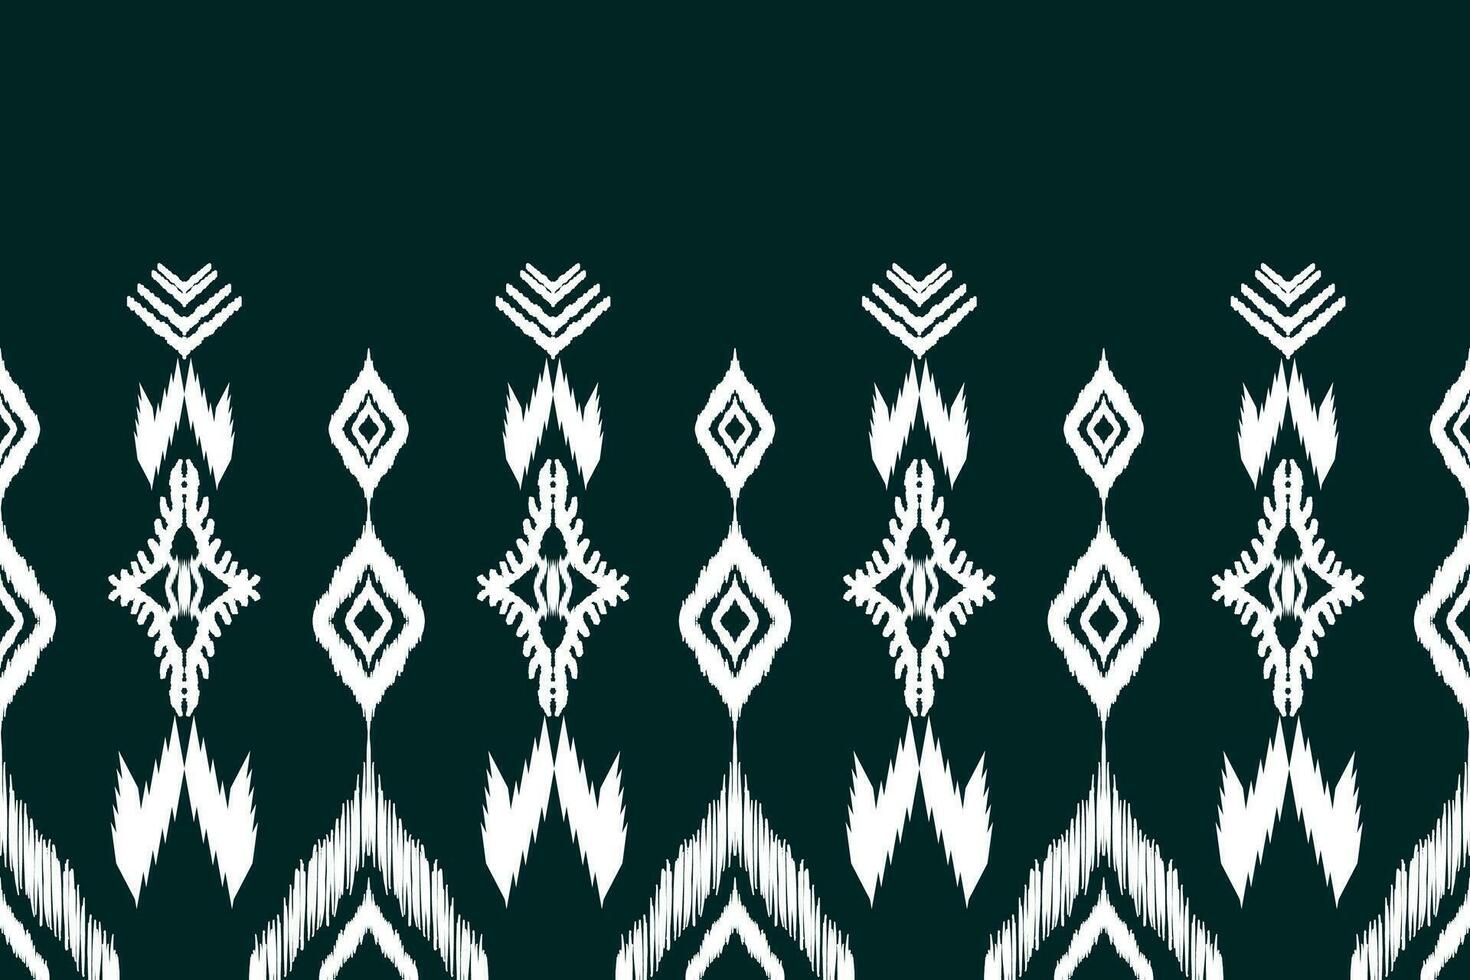 padrão étnico ikat sem emenda em tribal. impressão de ornamento étnico geométrico asteca. estilo padrão ikat. design para fundo, papel de parede, ilustração, tecido, roupas, tapete, têxtil, batik, bordado. vetor